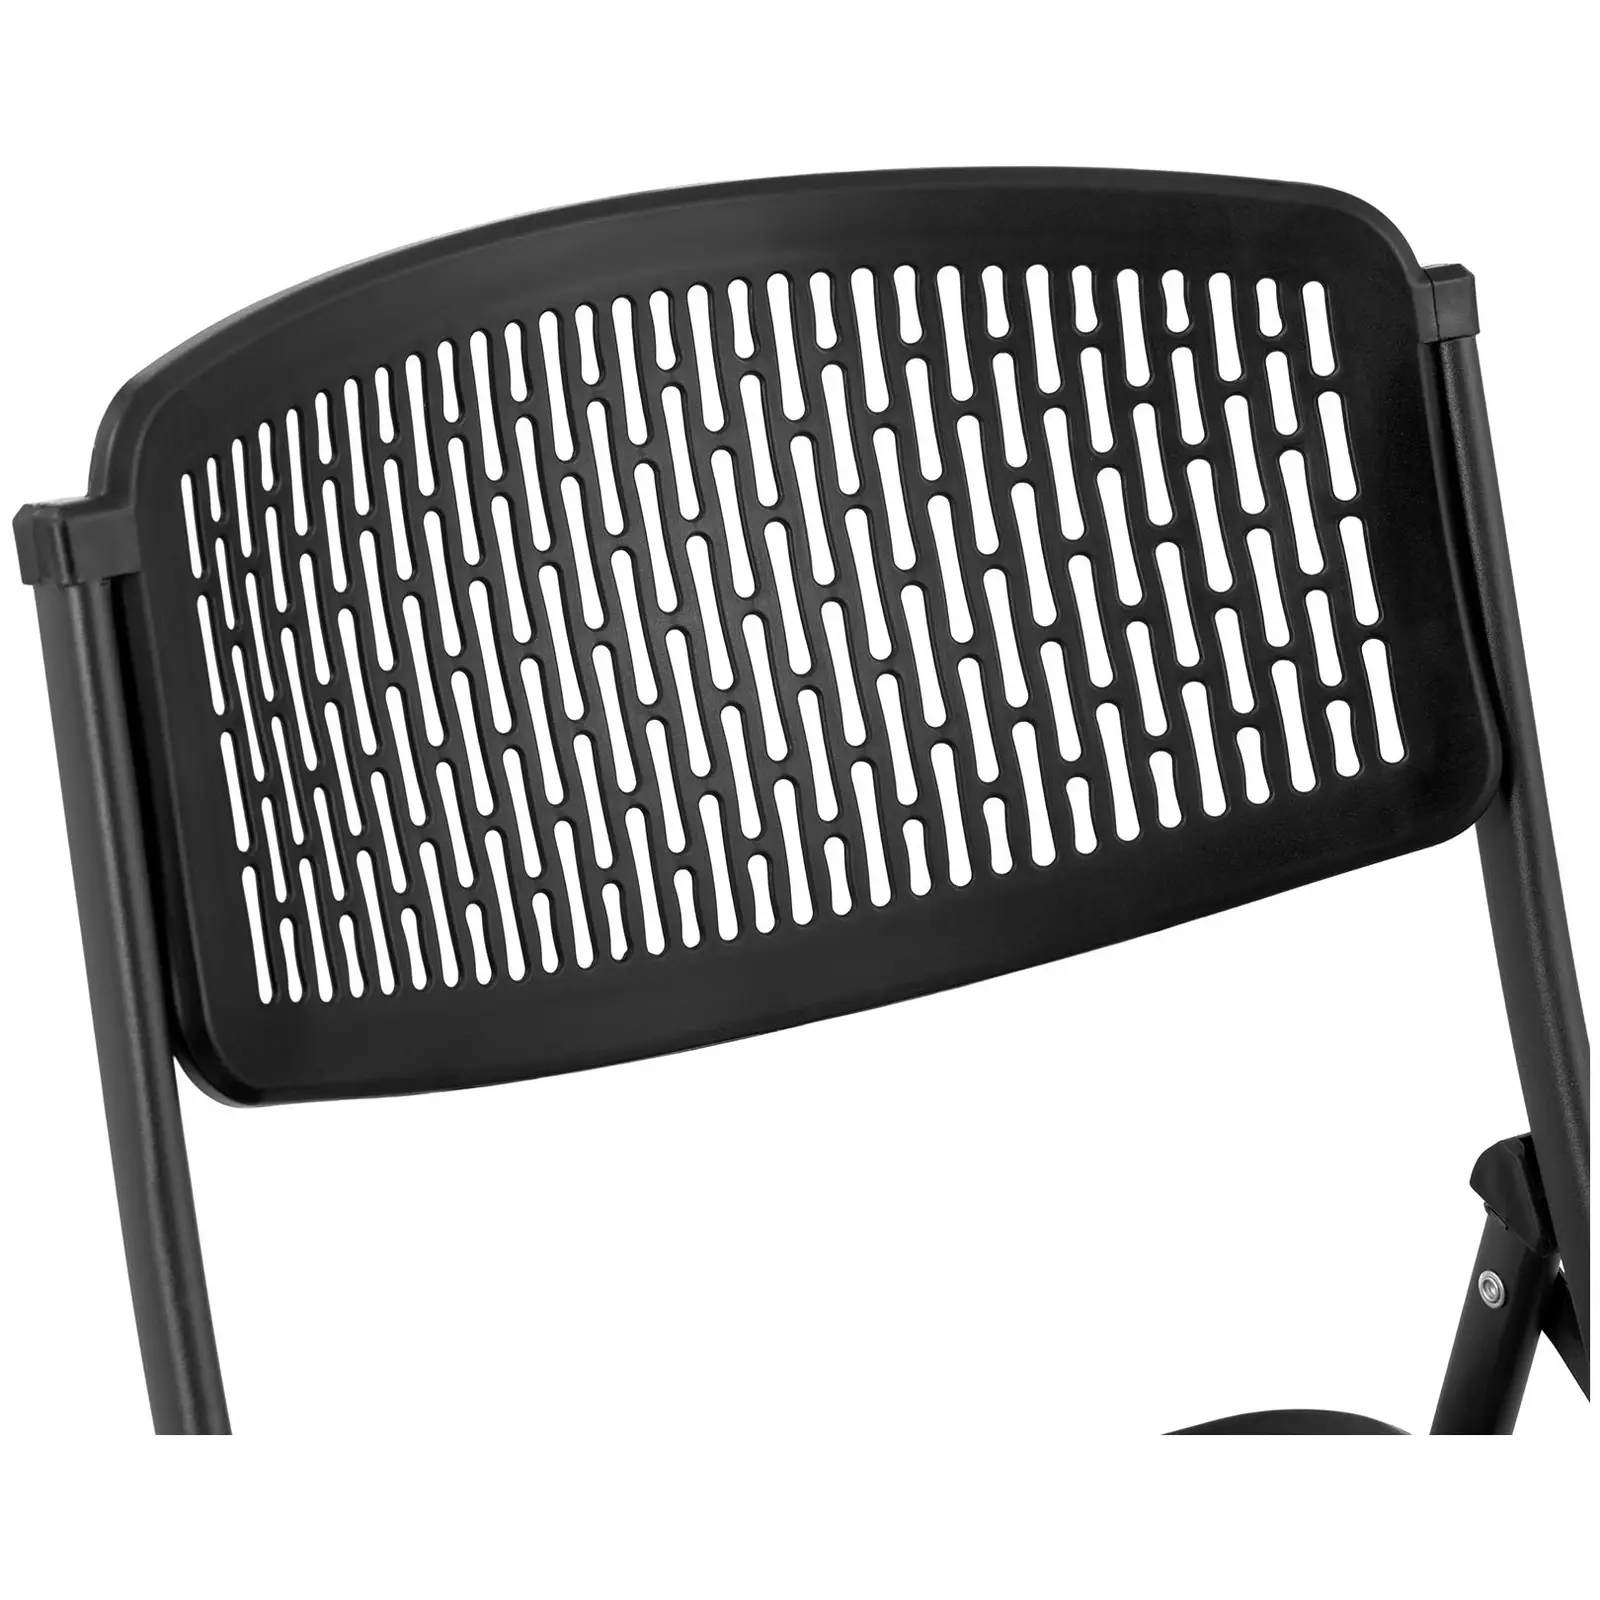 Chaise - Lot de 5 - 150 kg max. - Surface d'assise de 430 x 430 x 440 mm - Coloris noir - Conception pliante